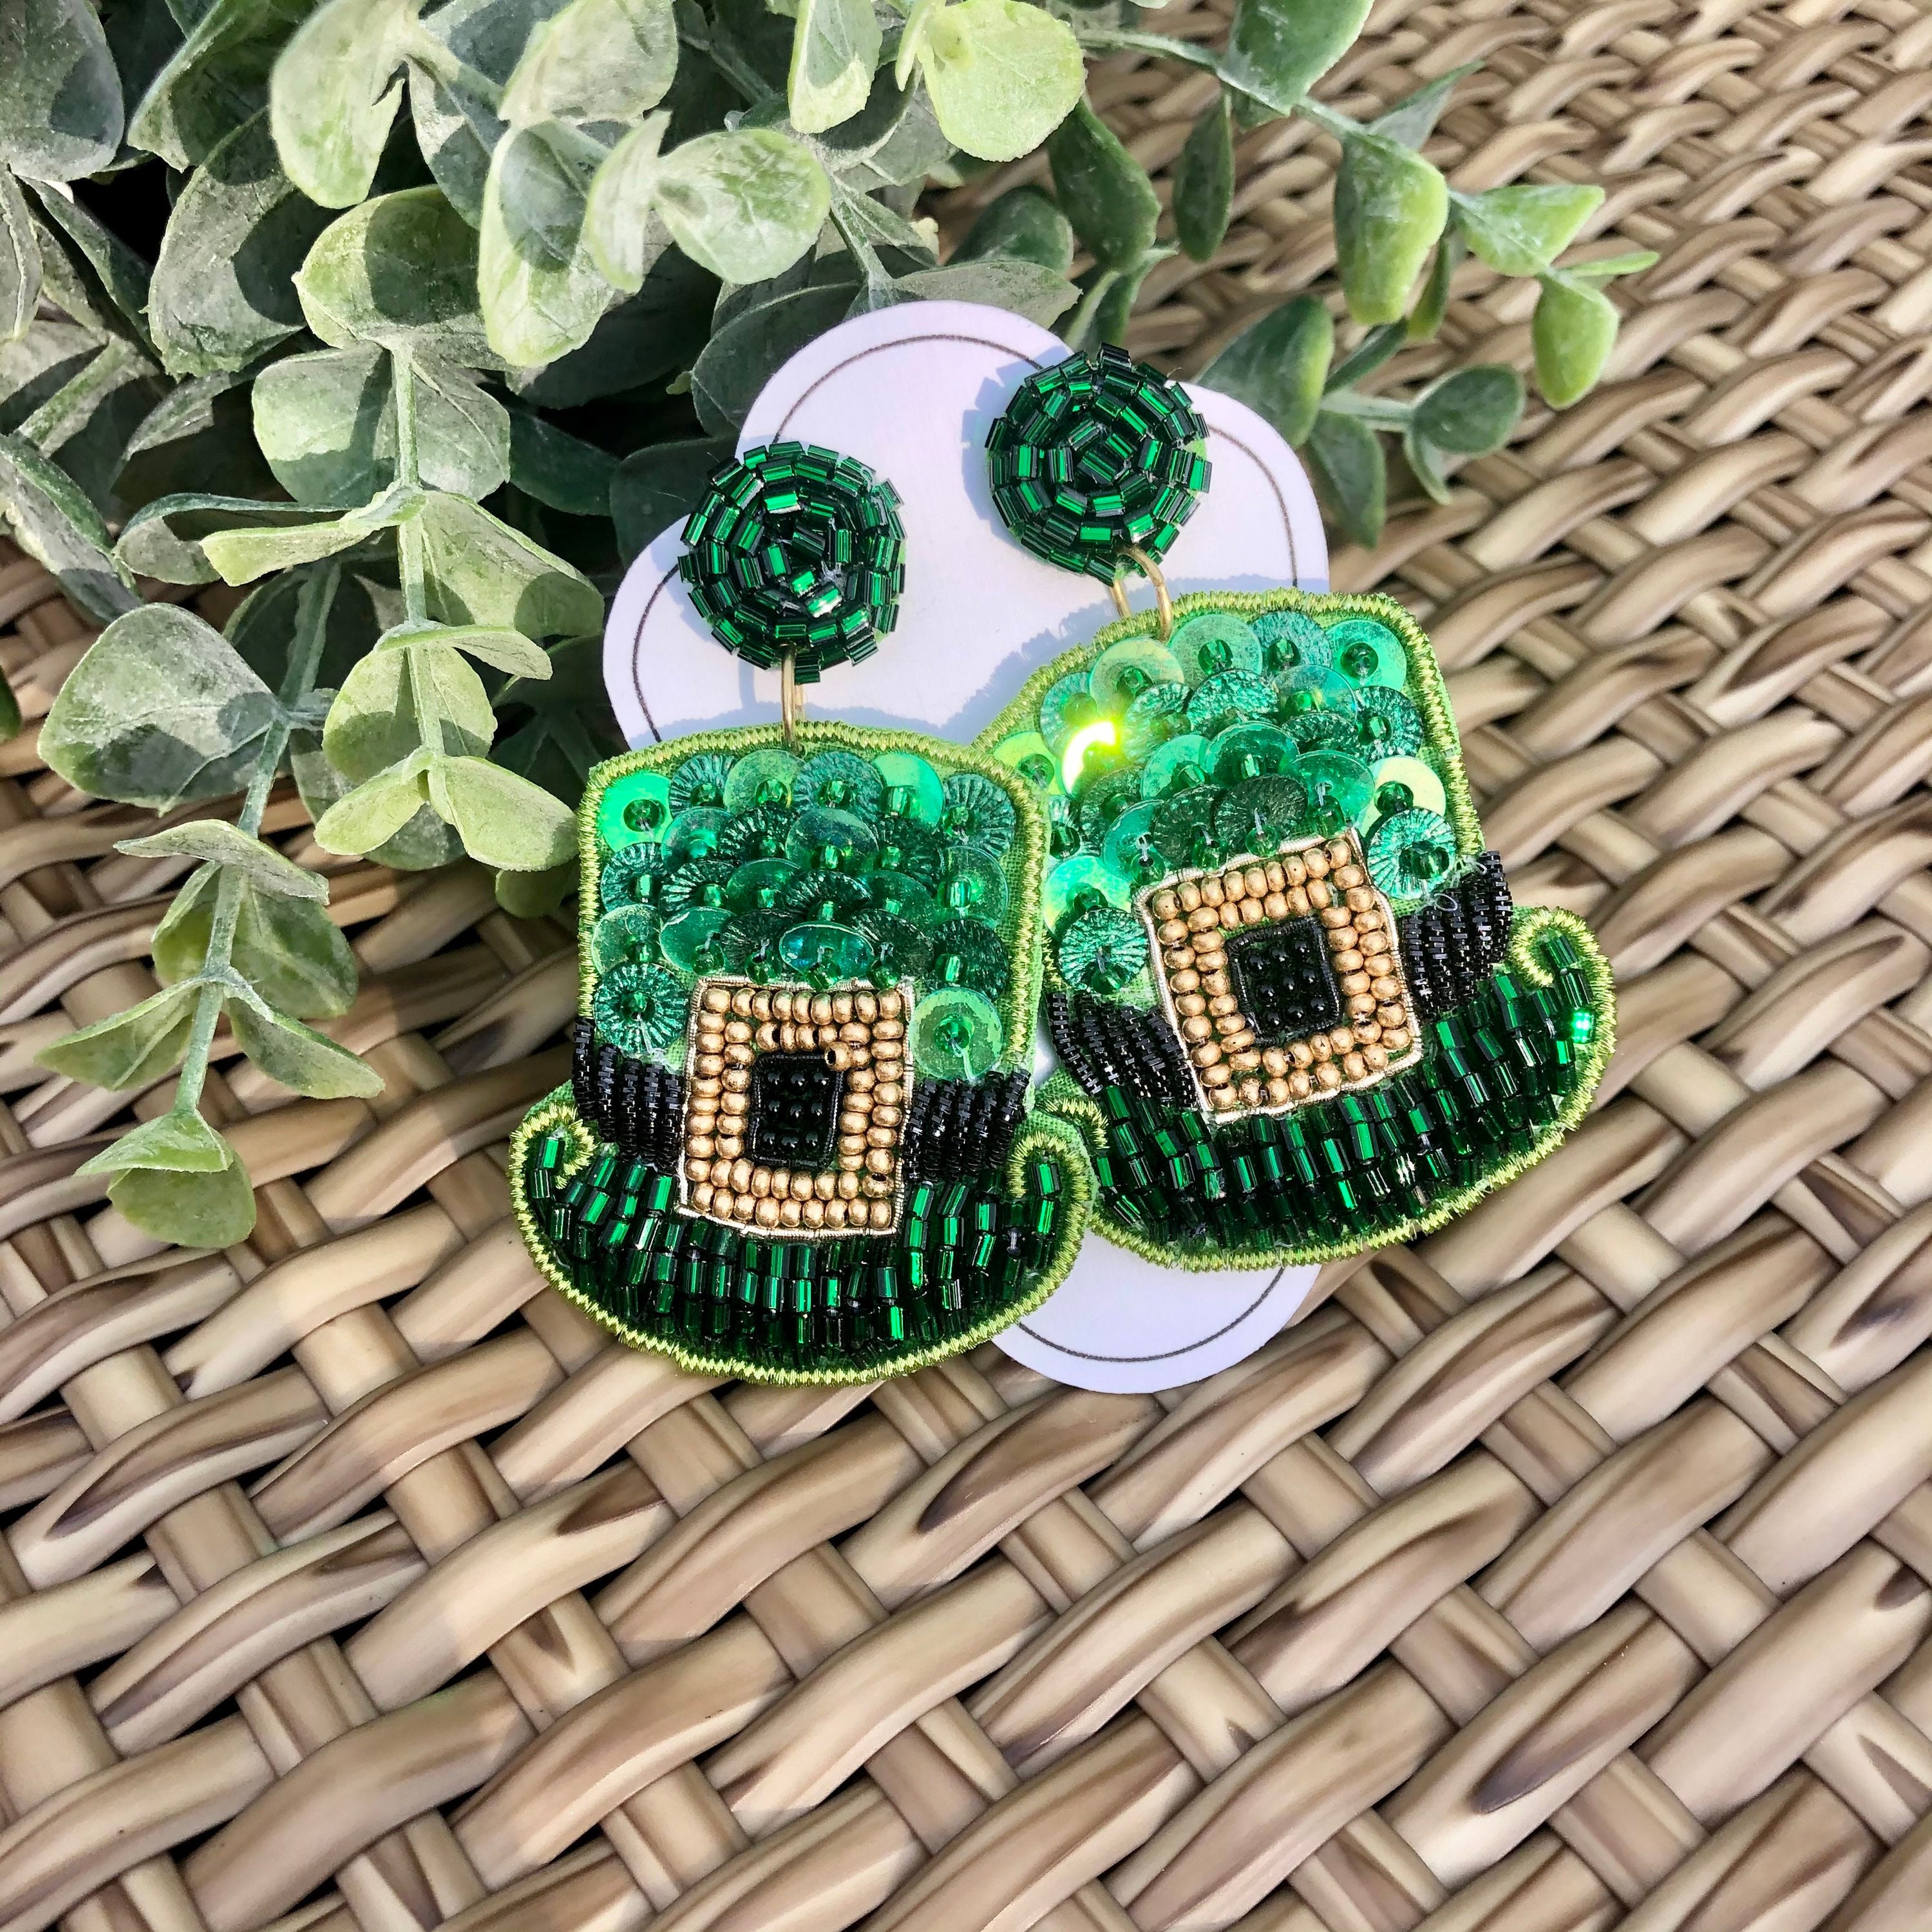 St PADDY'S Day Hat Earrings, St. Patrick's Day Earrings Sequin & Beaded  Seed Jewelry Irish Leprechaun Hat Lucky Green Earrings